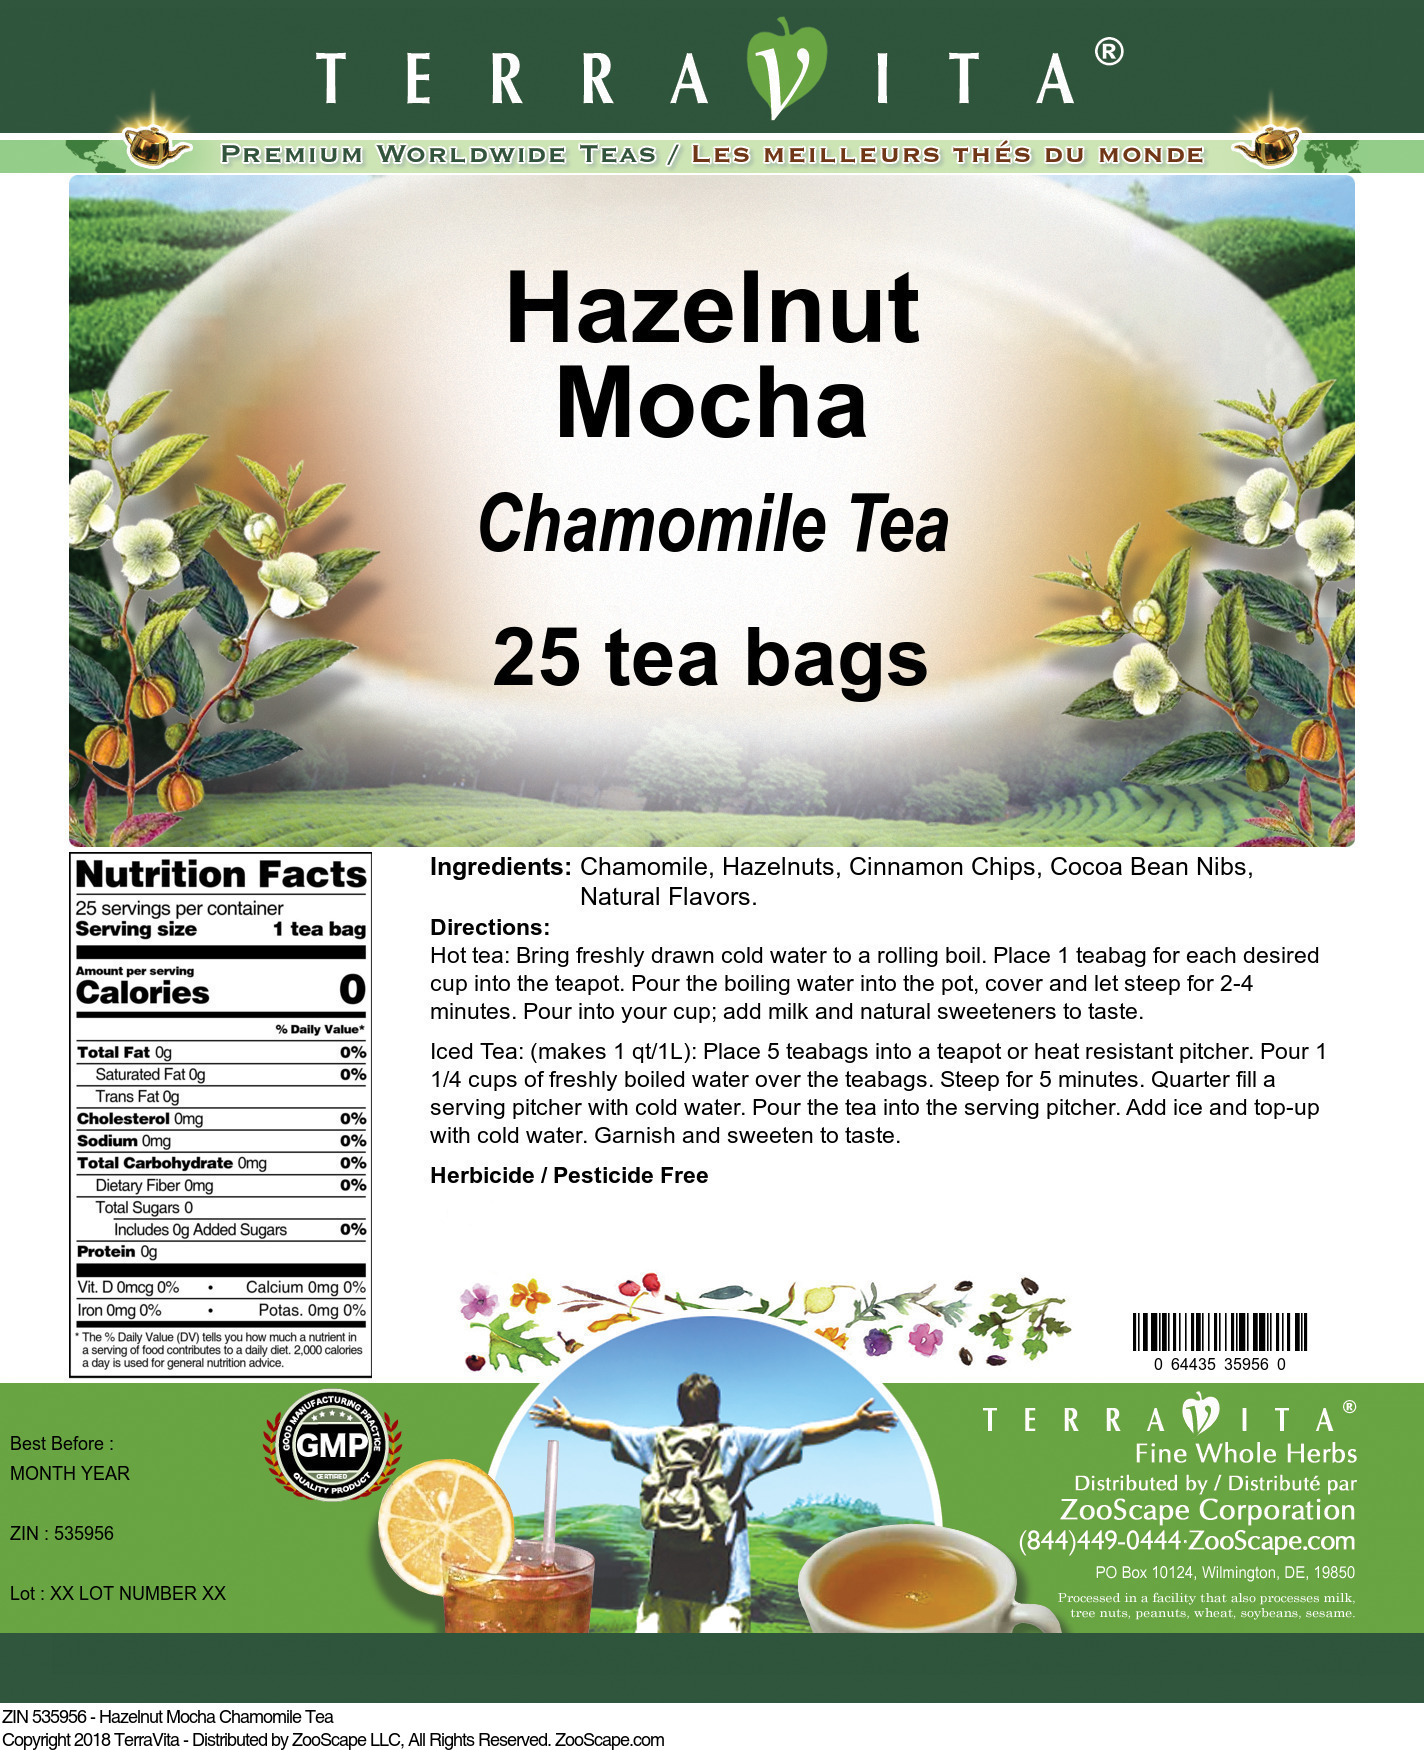 Hazelnut Mocha Chamomile Tea - Label